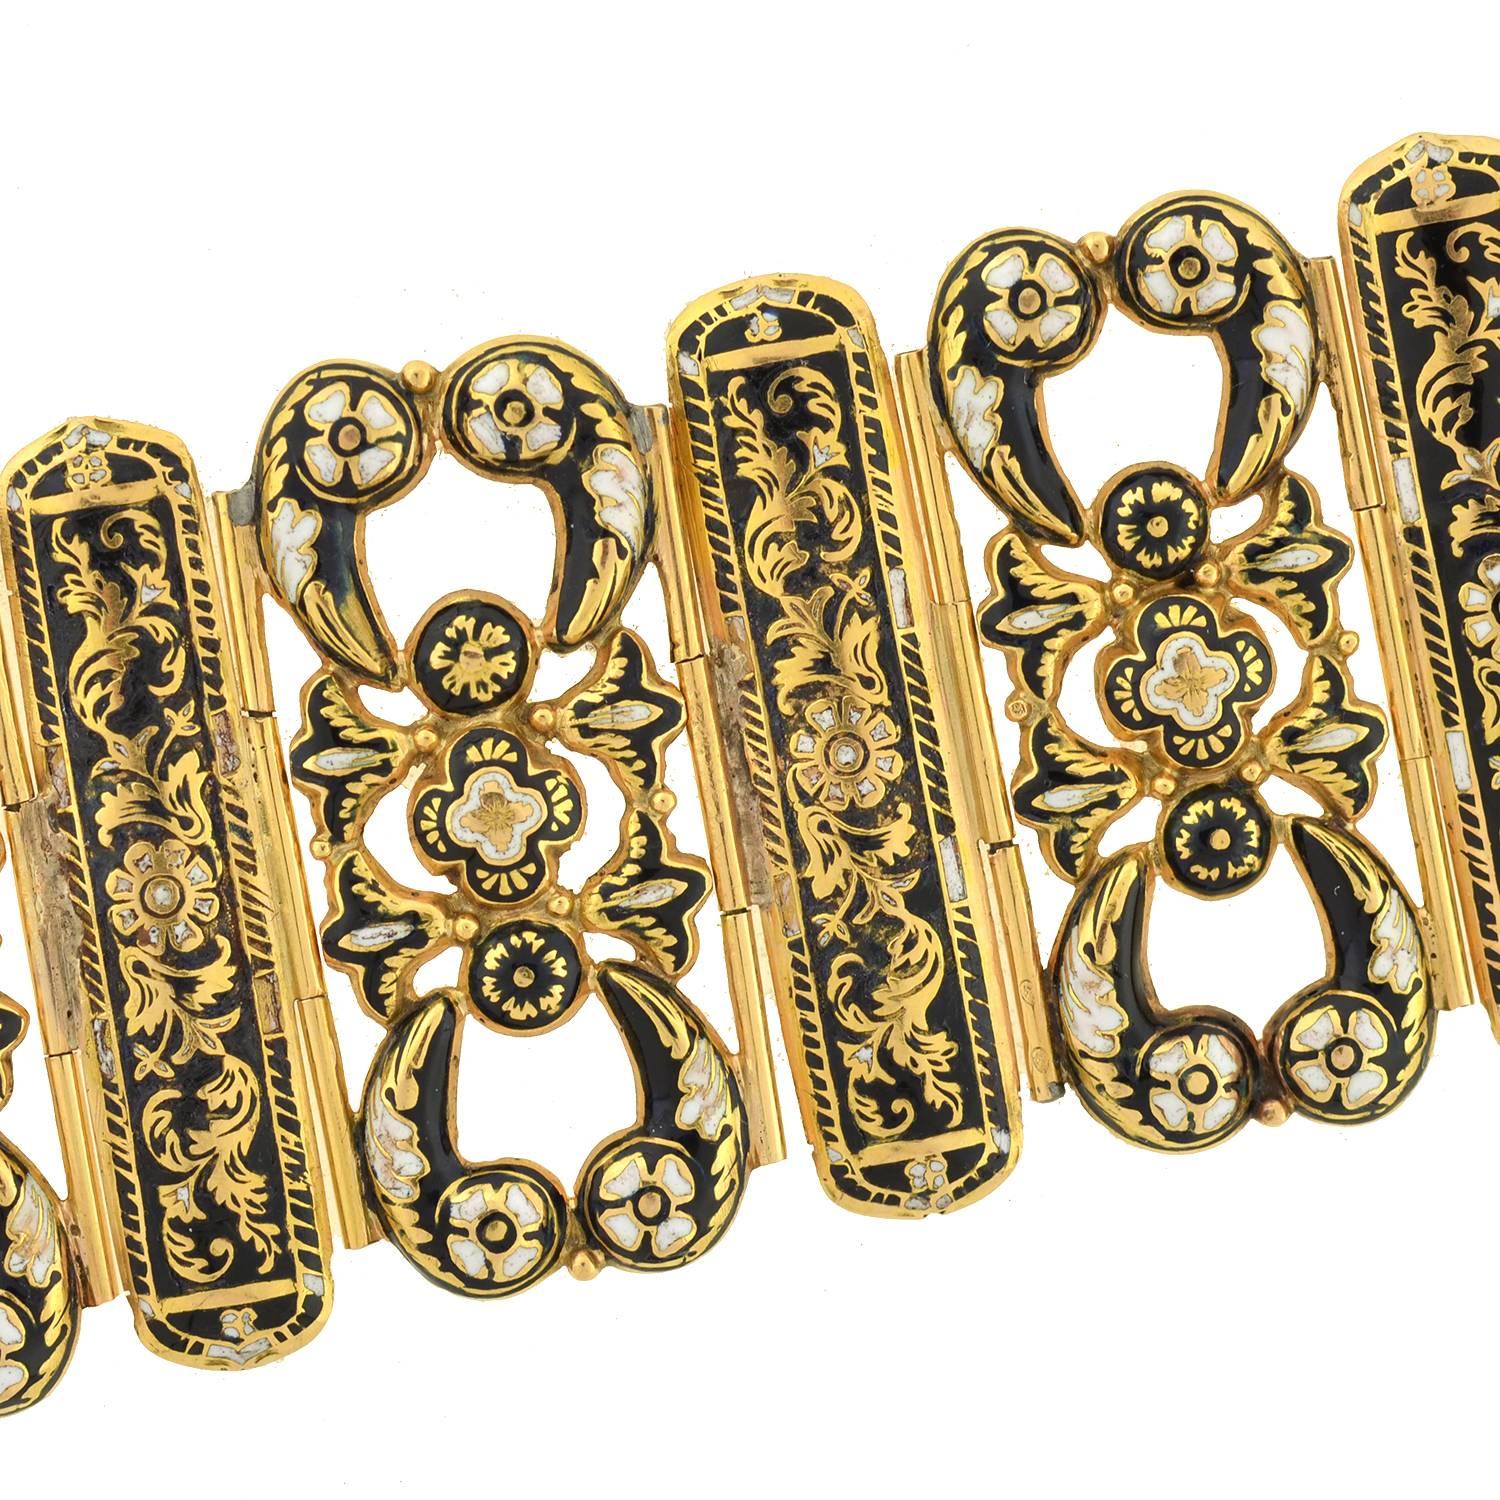 gold locket bracelet